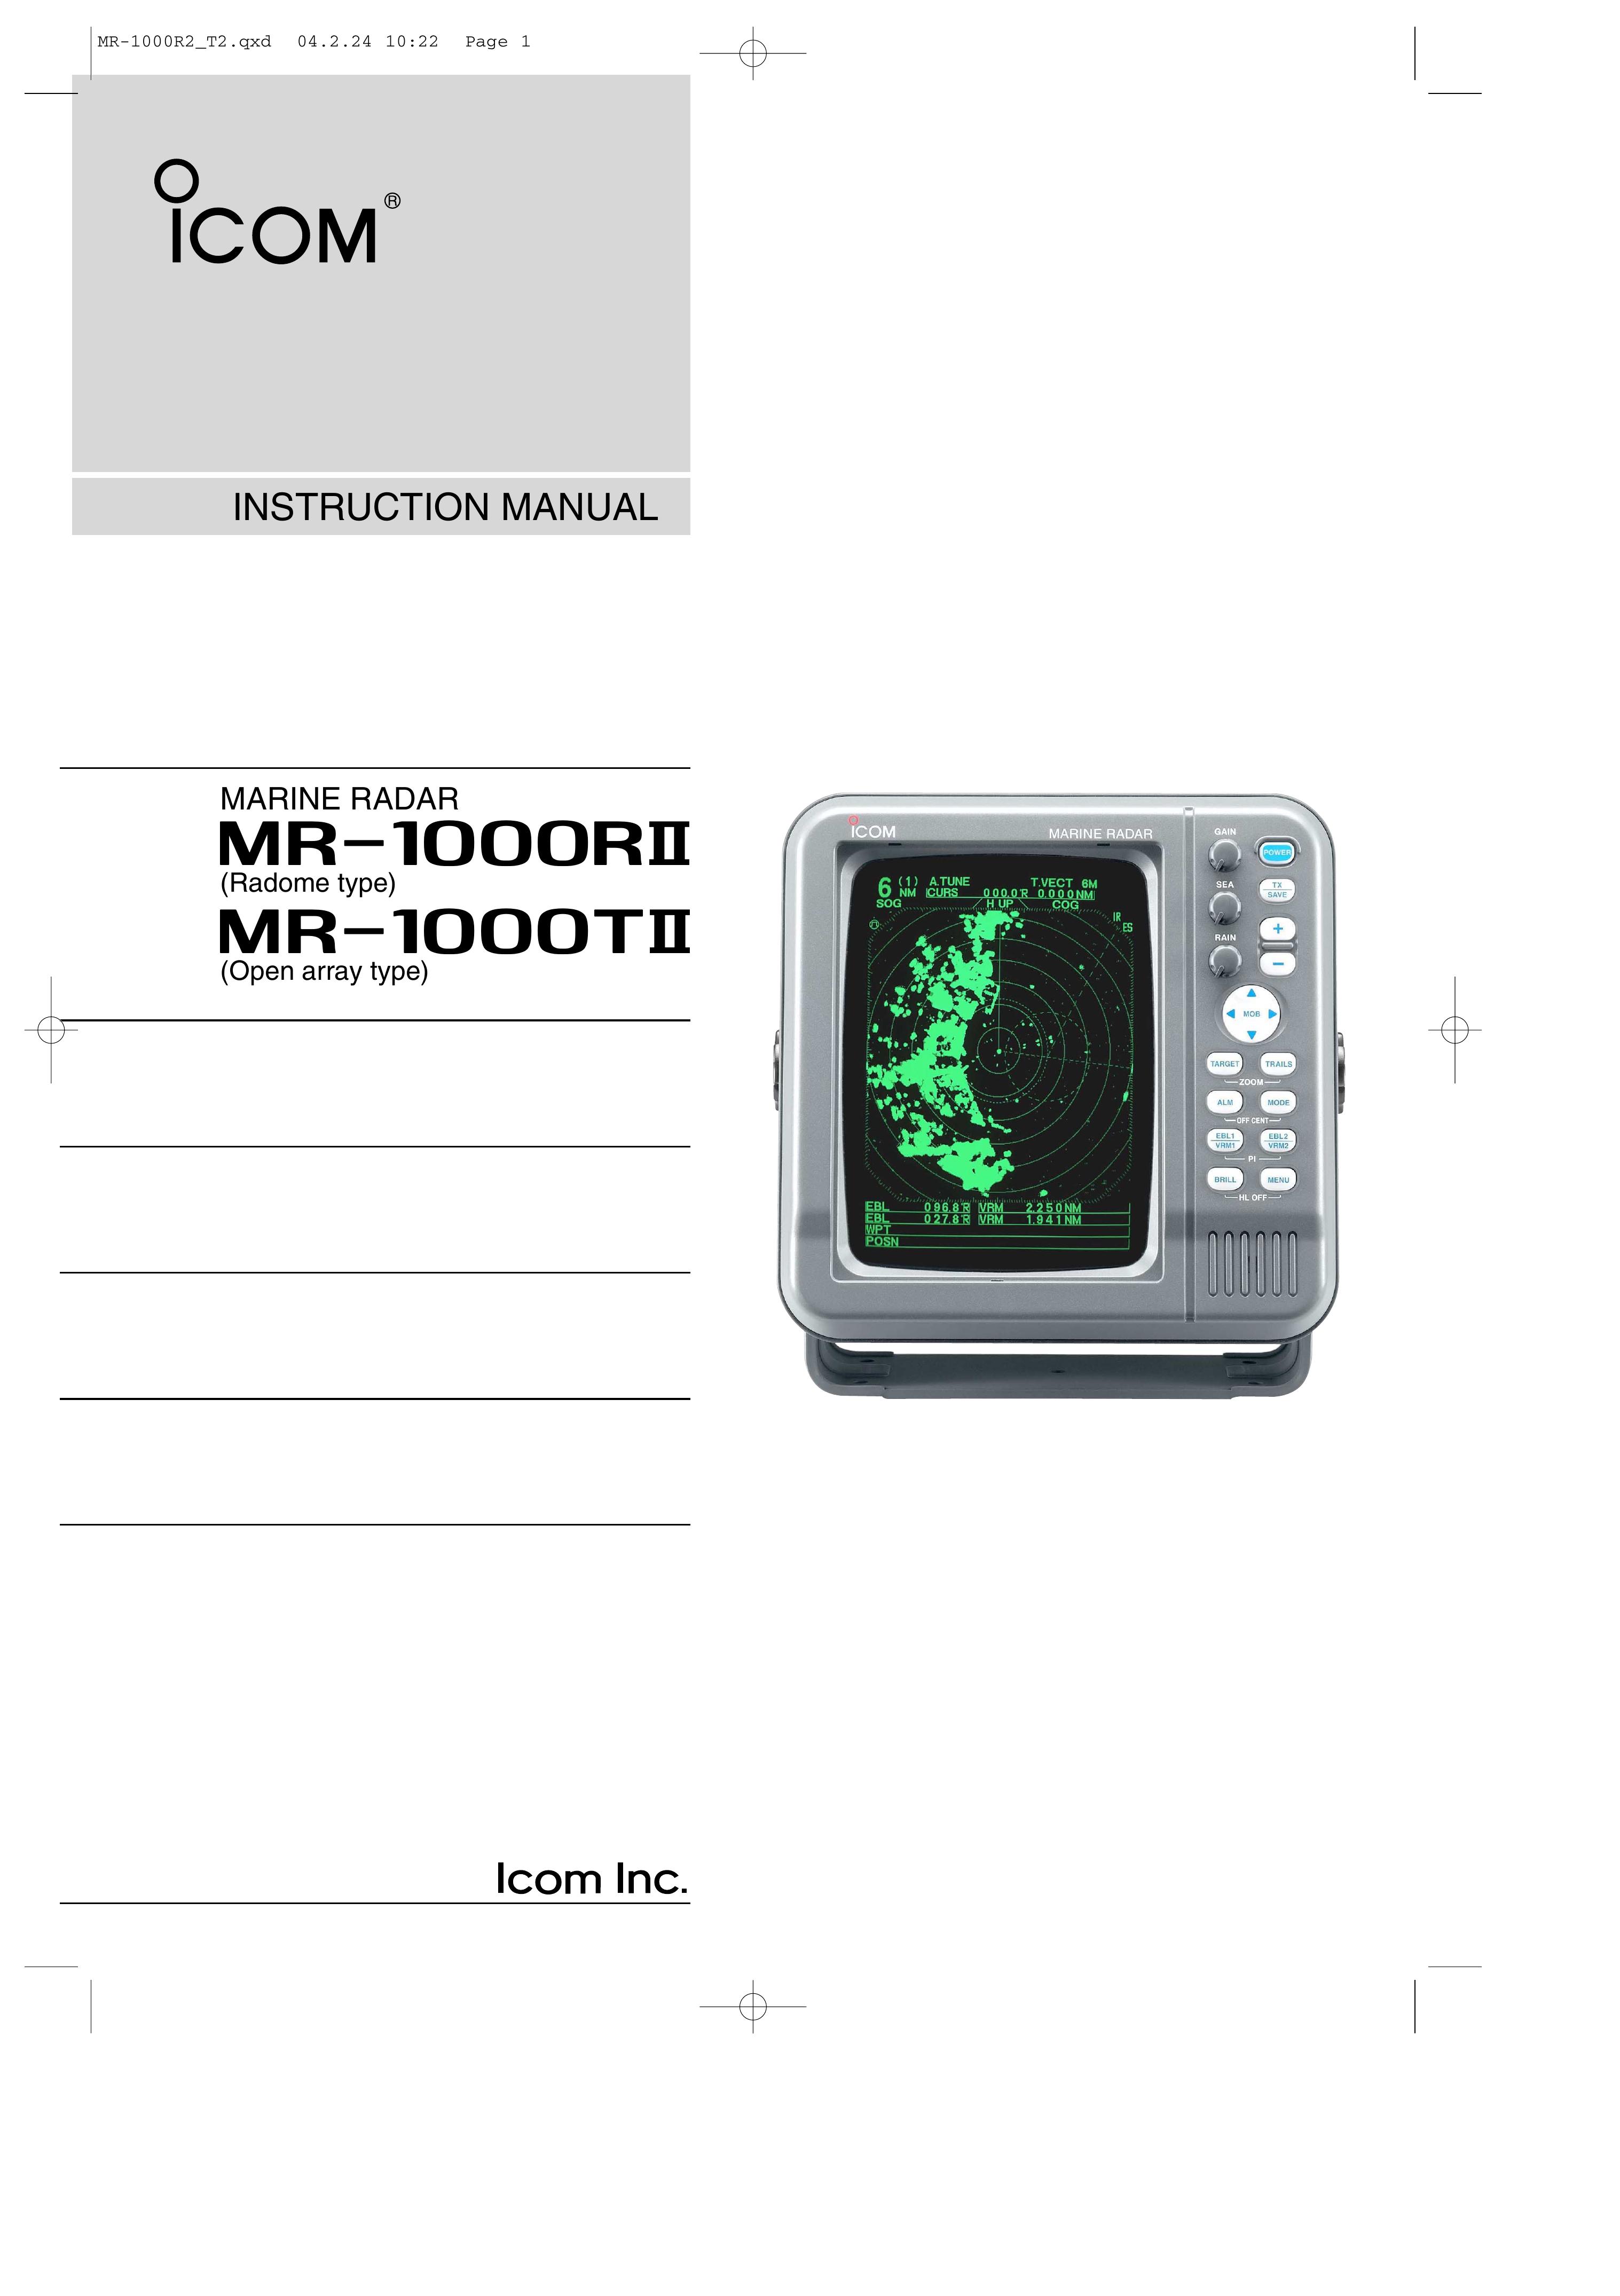 Icom MR-1000RTM Fish Finder User Manual